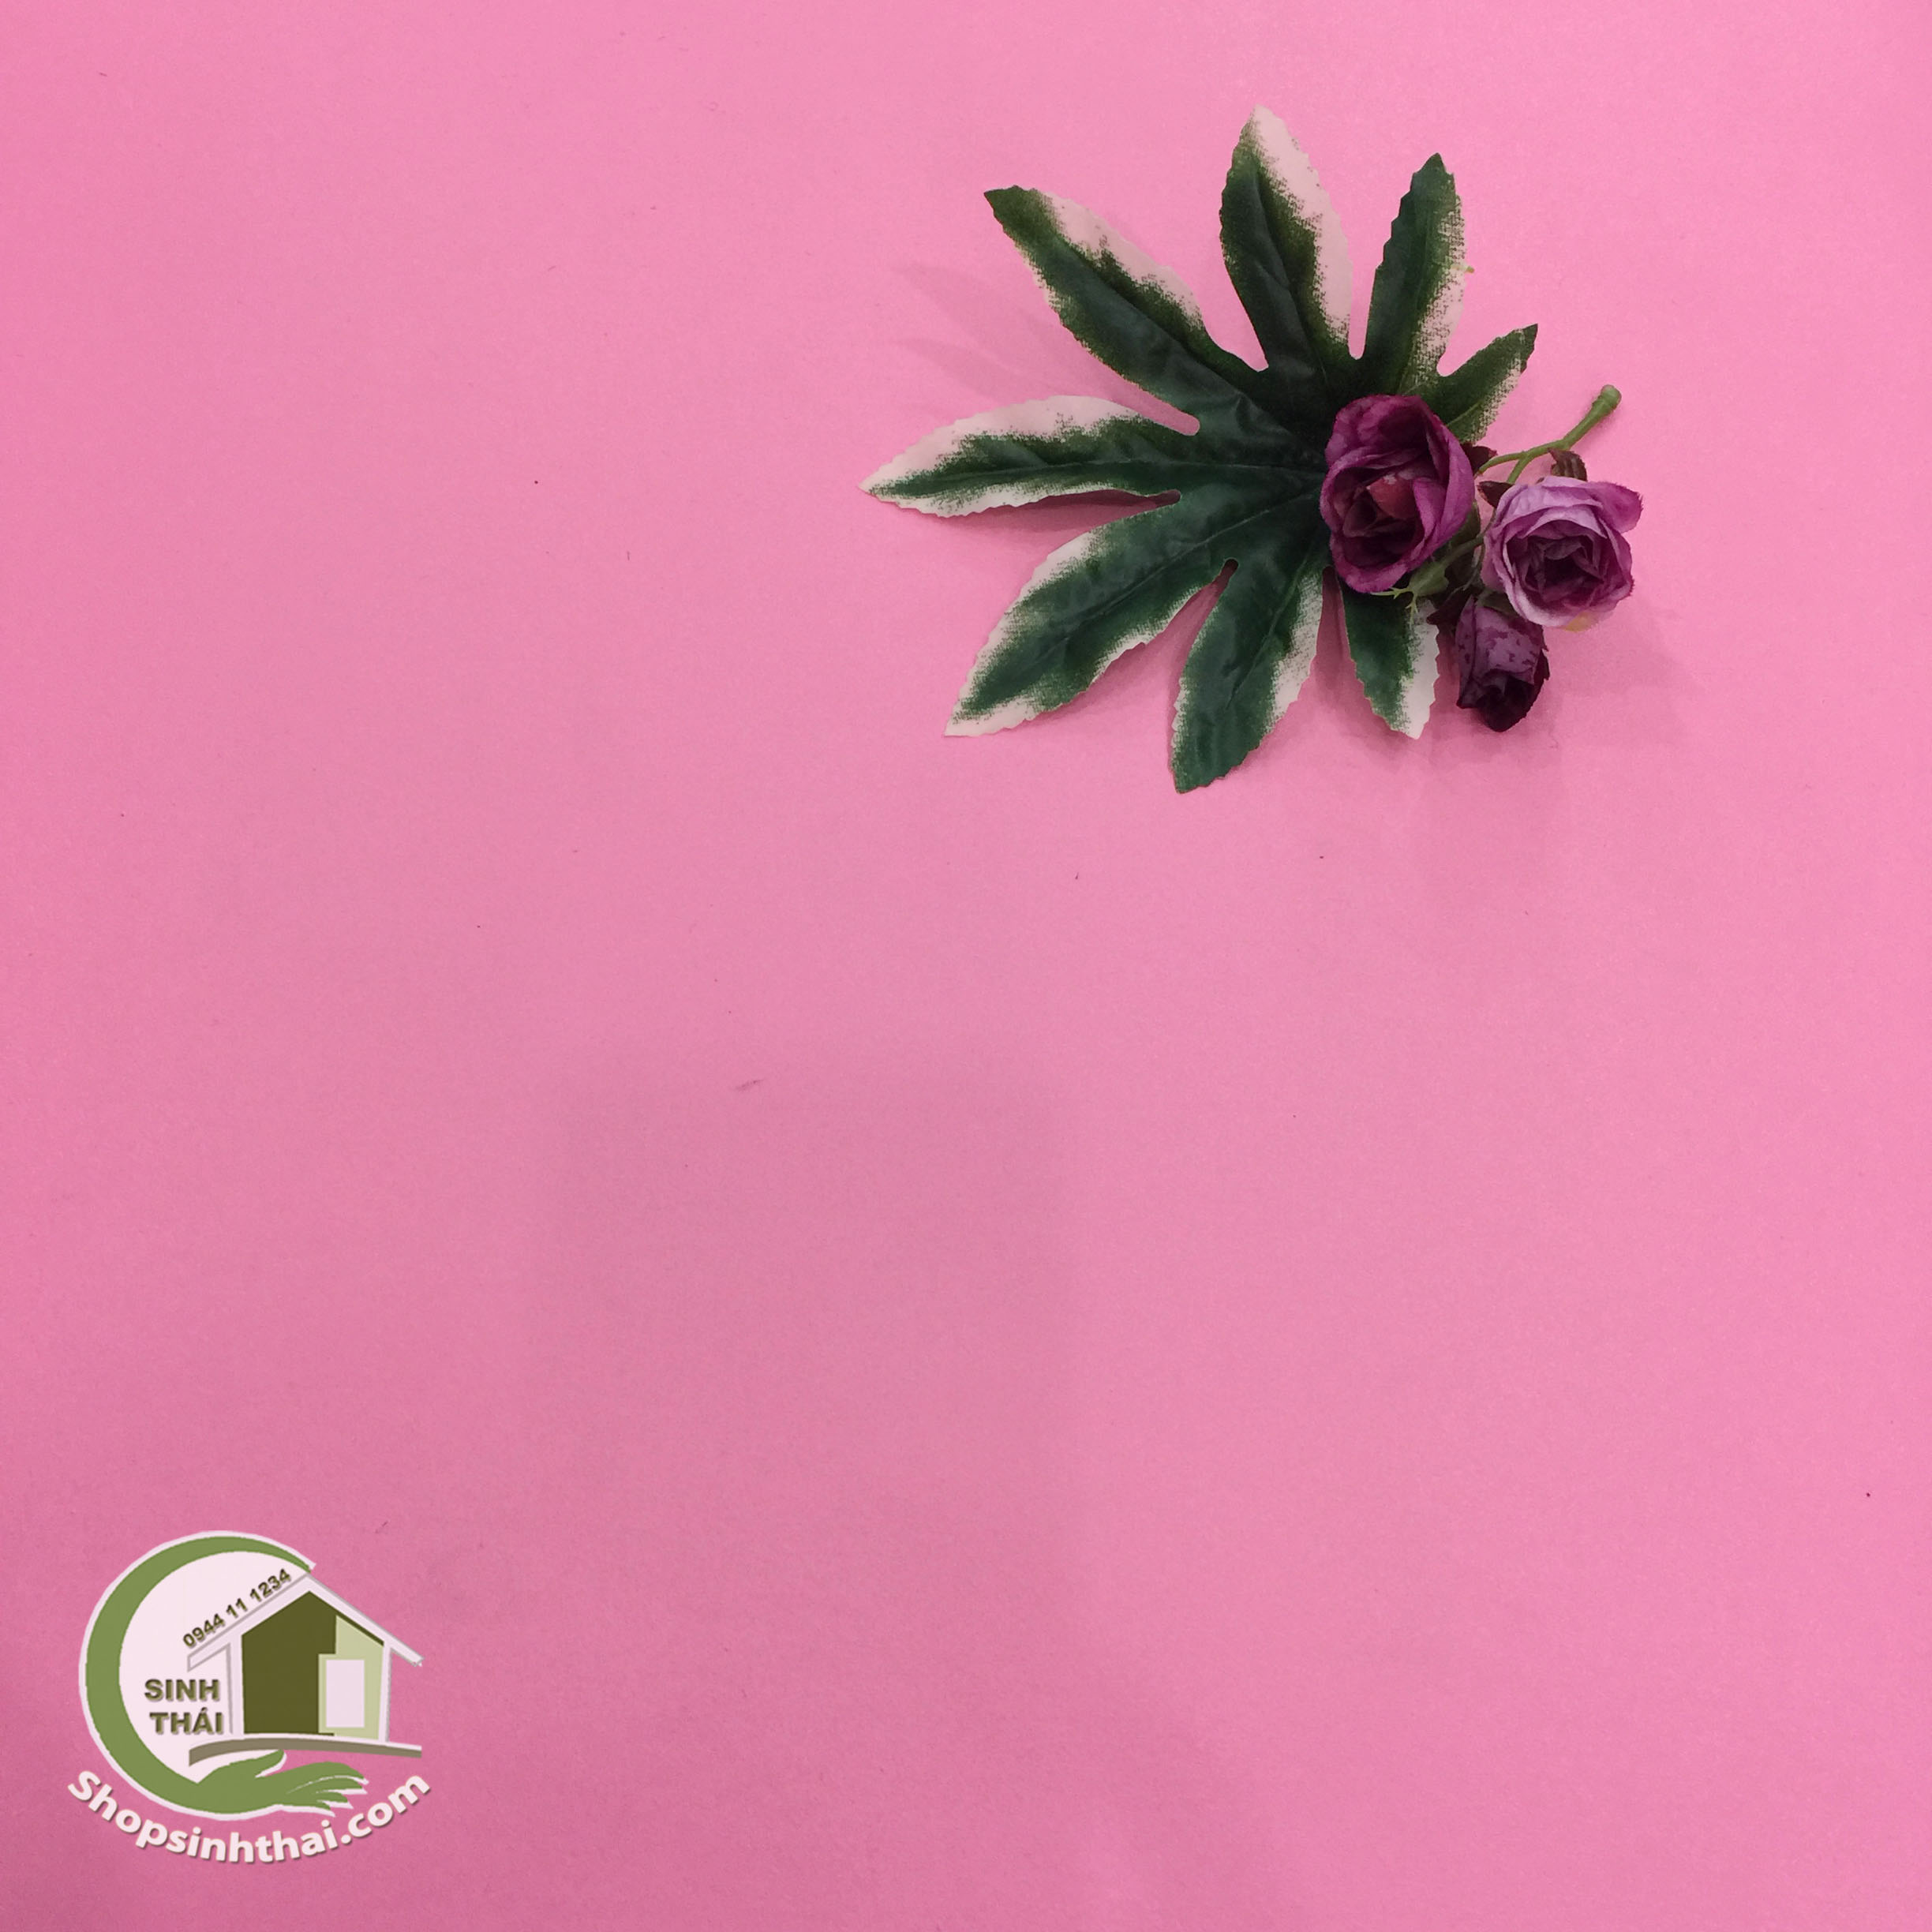 Phông nền giấy dán tường màu hồng nhám là món quà hoàn hảo cho những ai yêu thích sự dịu dàng và ngọt ngào. Với chất liệu bền đẹp và dễ dàng bảo quản, phông nền giấy này sẽ làm cho không gian của bạn trở nên hoàn hảo hơn. Hãy xem ngay hình ảnh liên quan để cảm nhận được sự ấm áp và nhẹ nhàng của phông nền giấy màu hồng nhám.